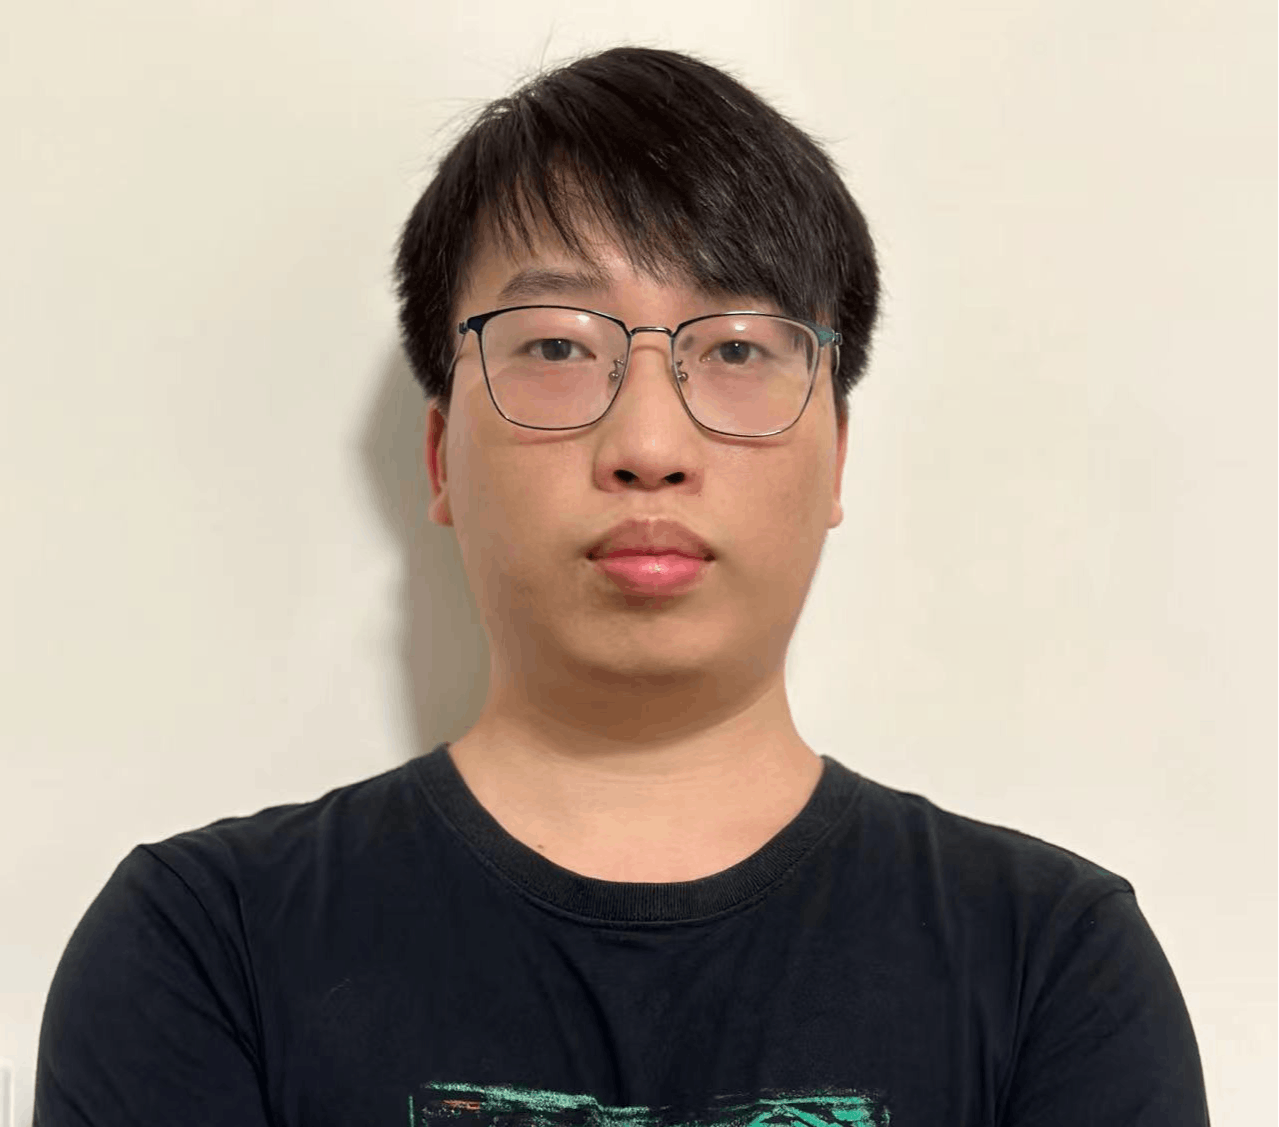 Zhou Jieguang HackerNoon profile picture